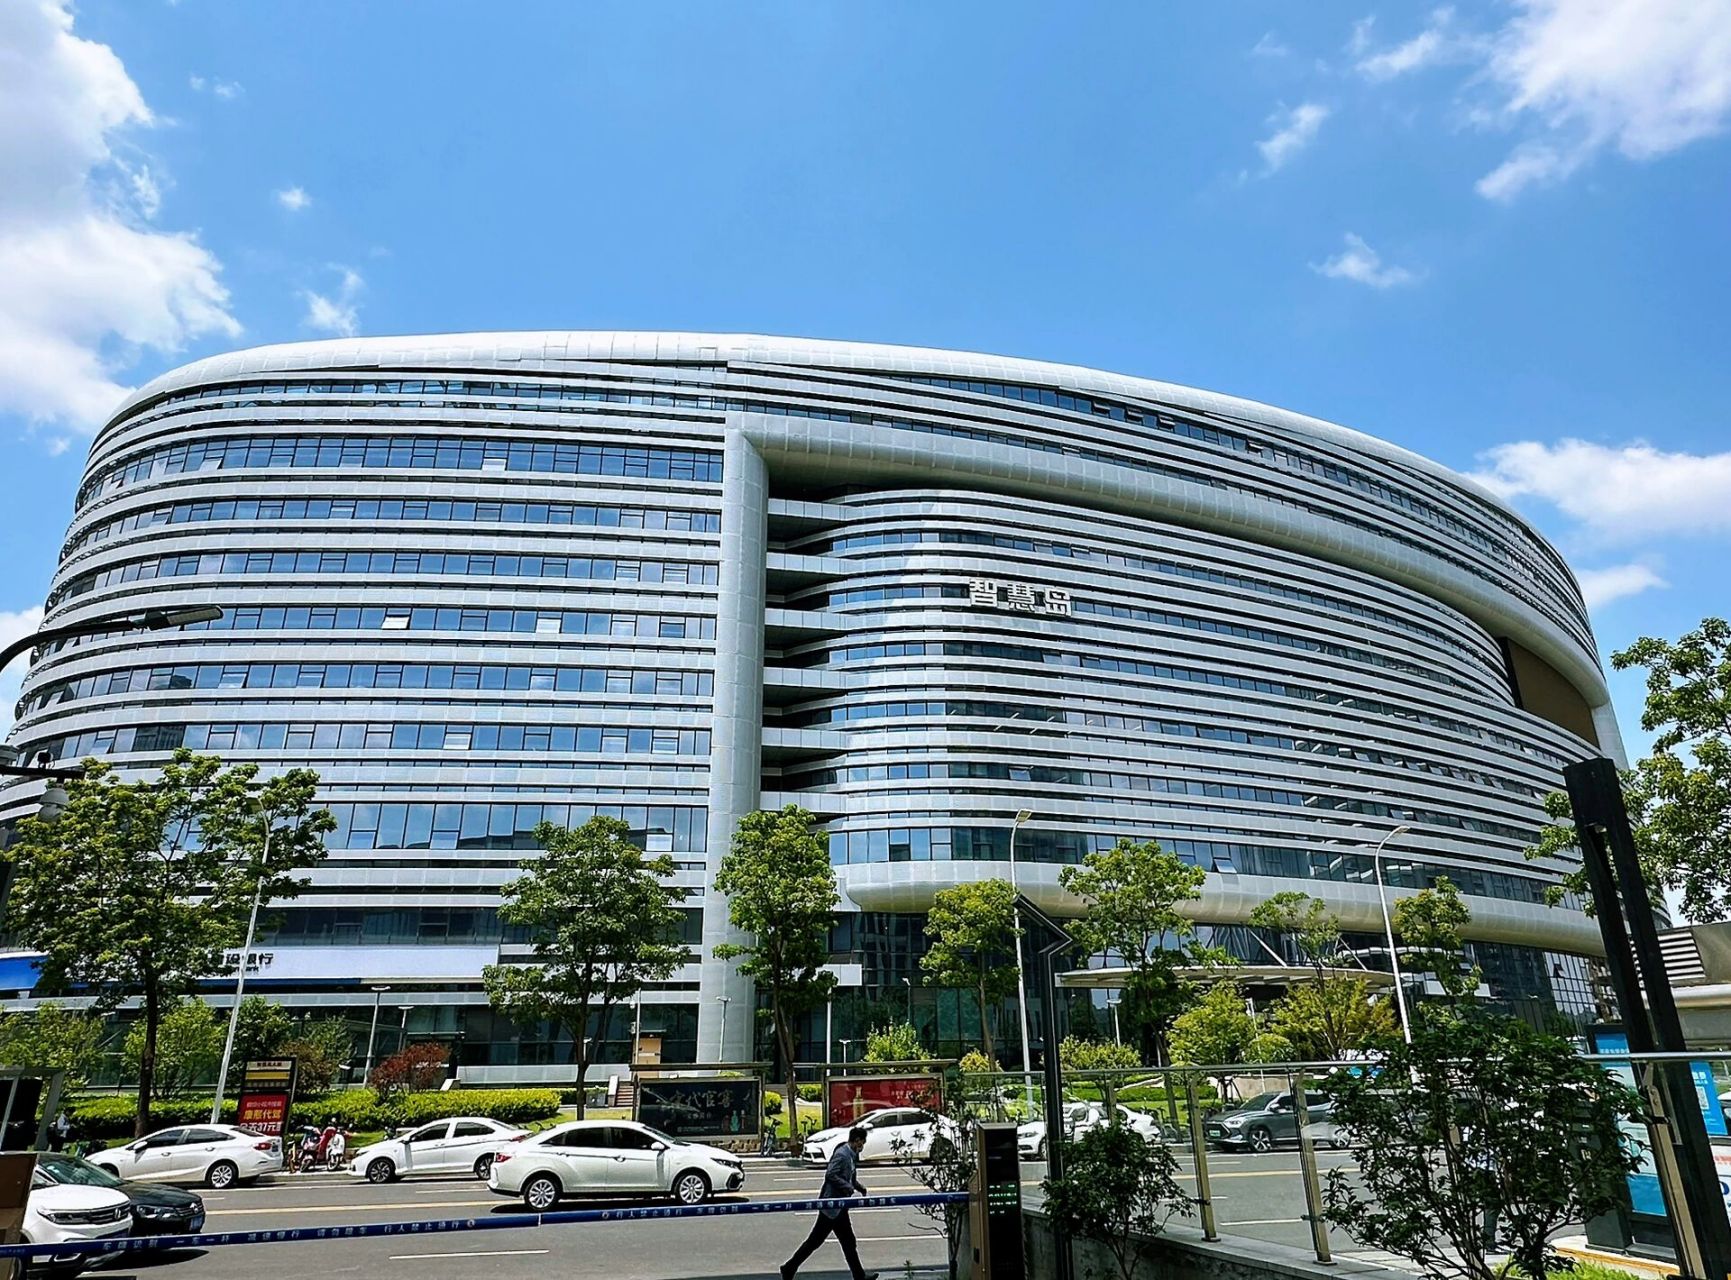 路过河南省科学院,应该是新院区 在龙子湖智慧岛上和国家转移郑州中心